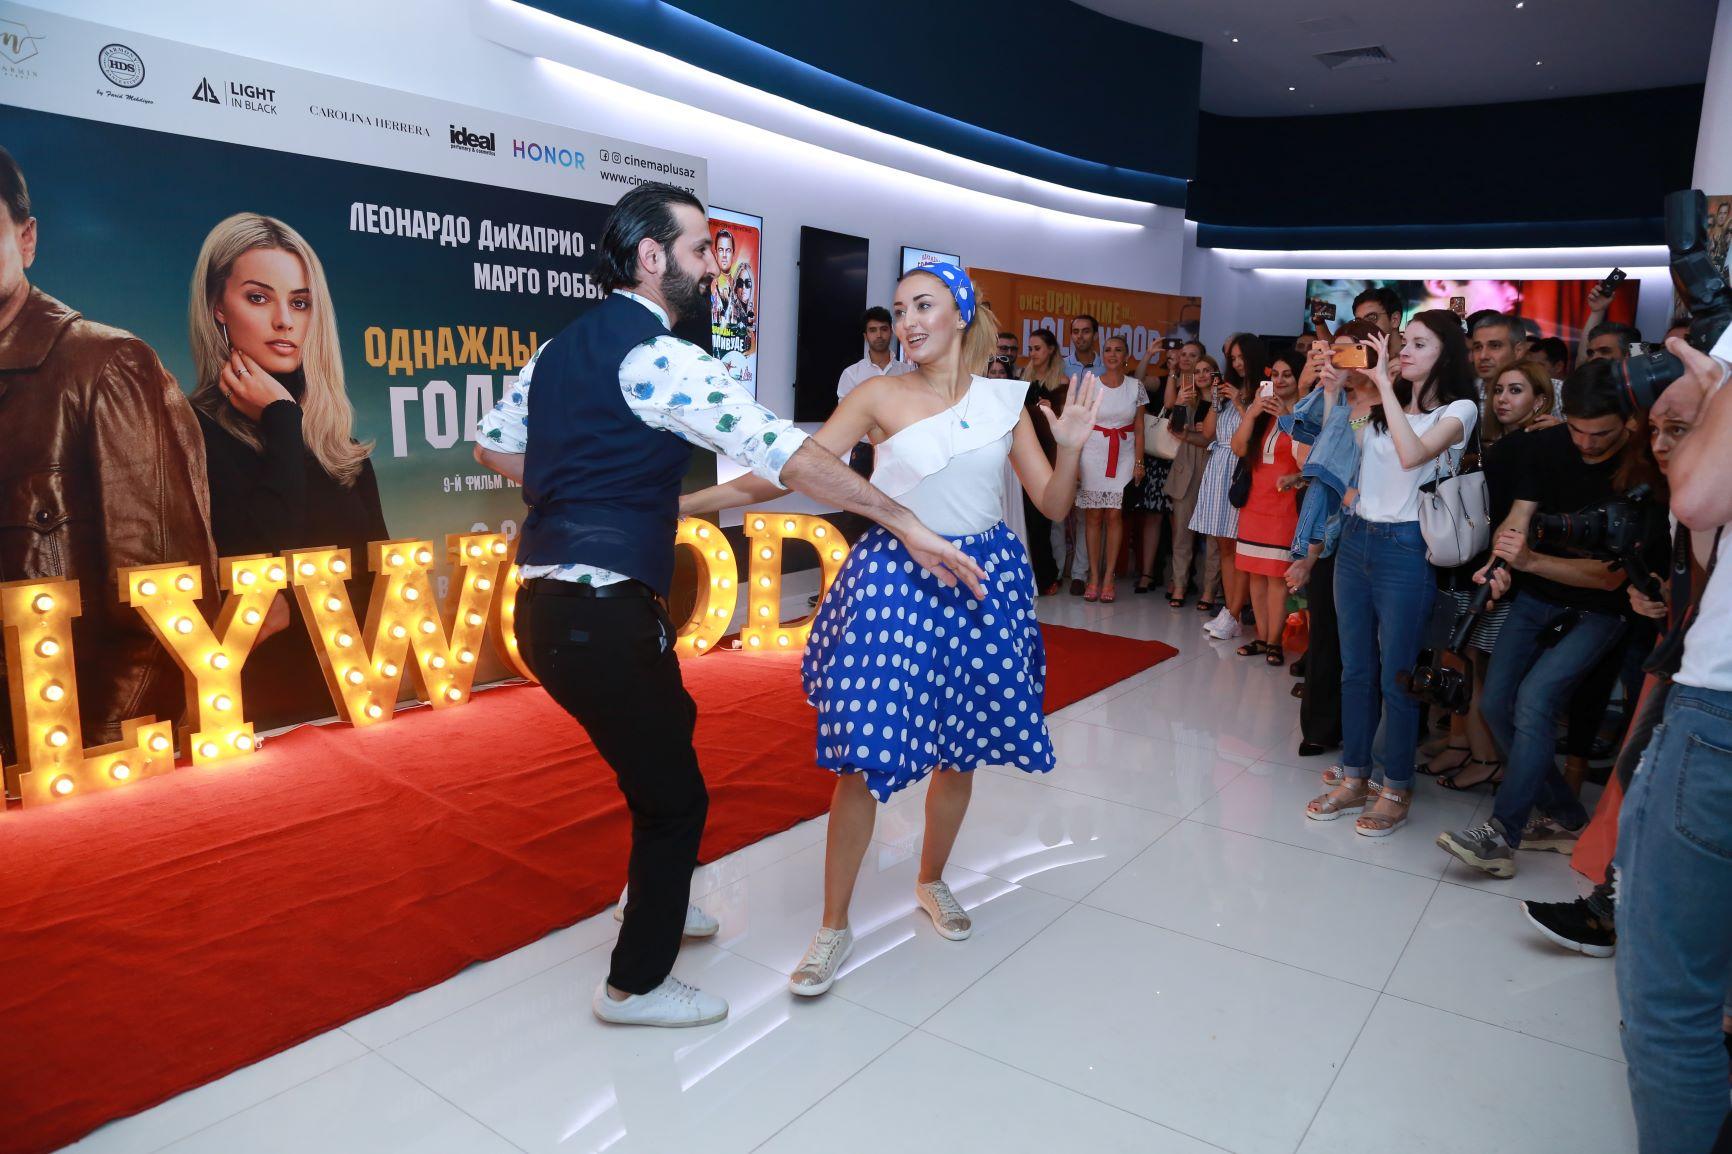 "Однажды в … Голливуде" – долгожданная премьера от Квентина Тарантино  в Баку (ФОТО, ВИДЕО)